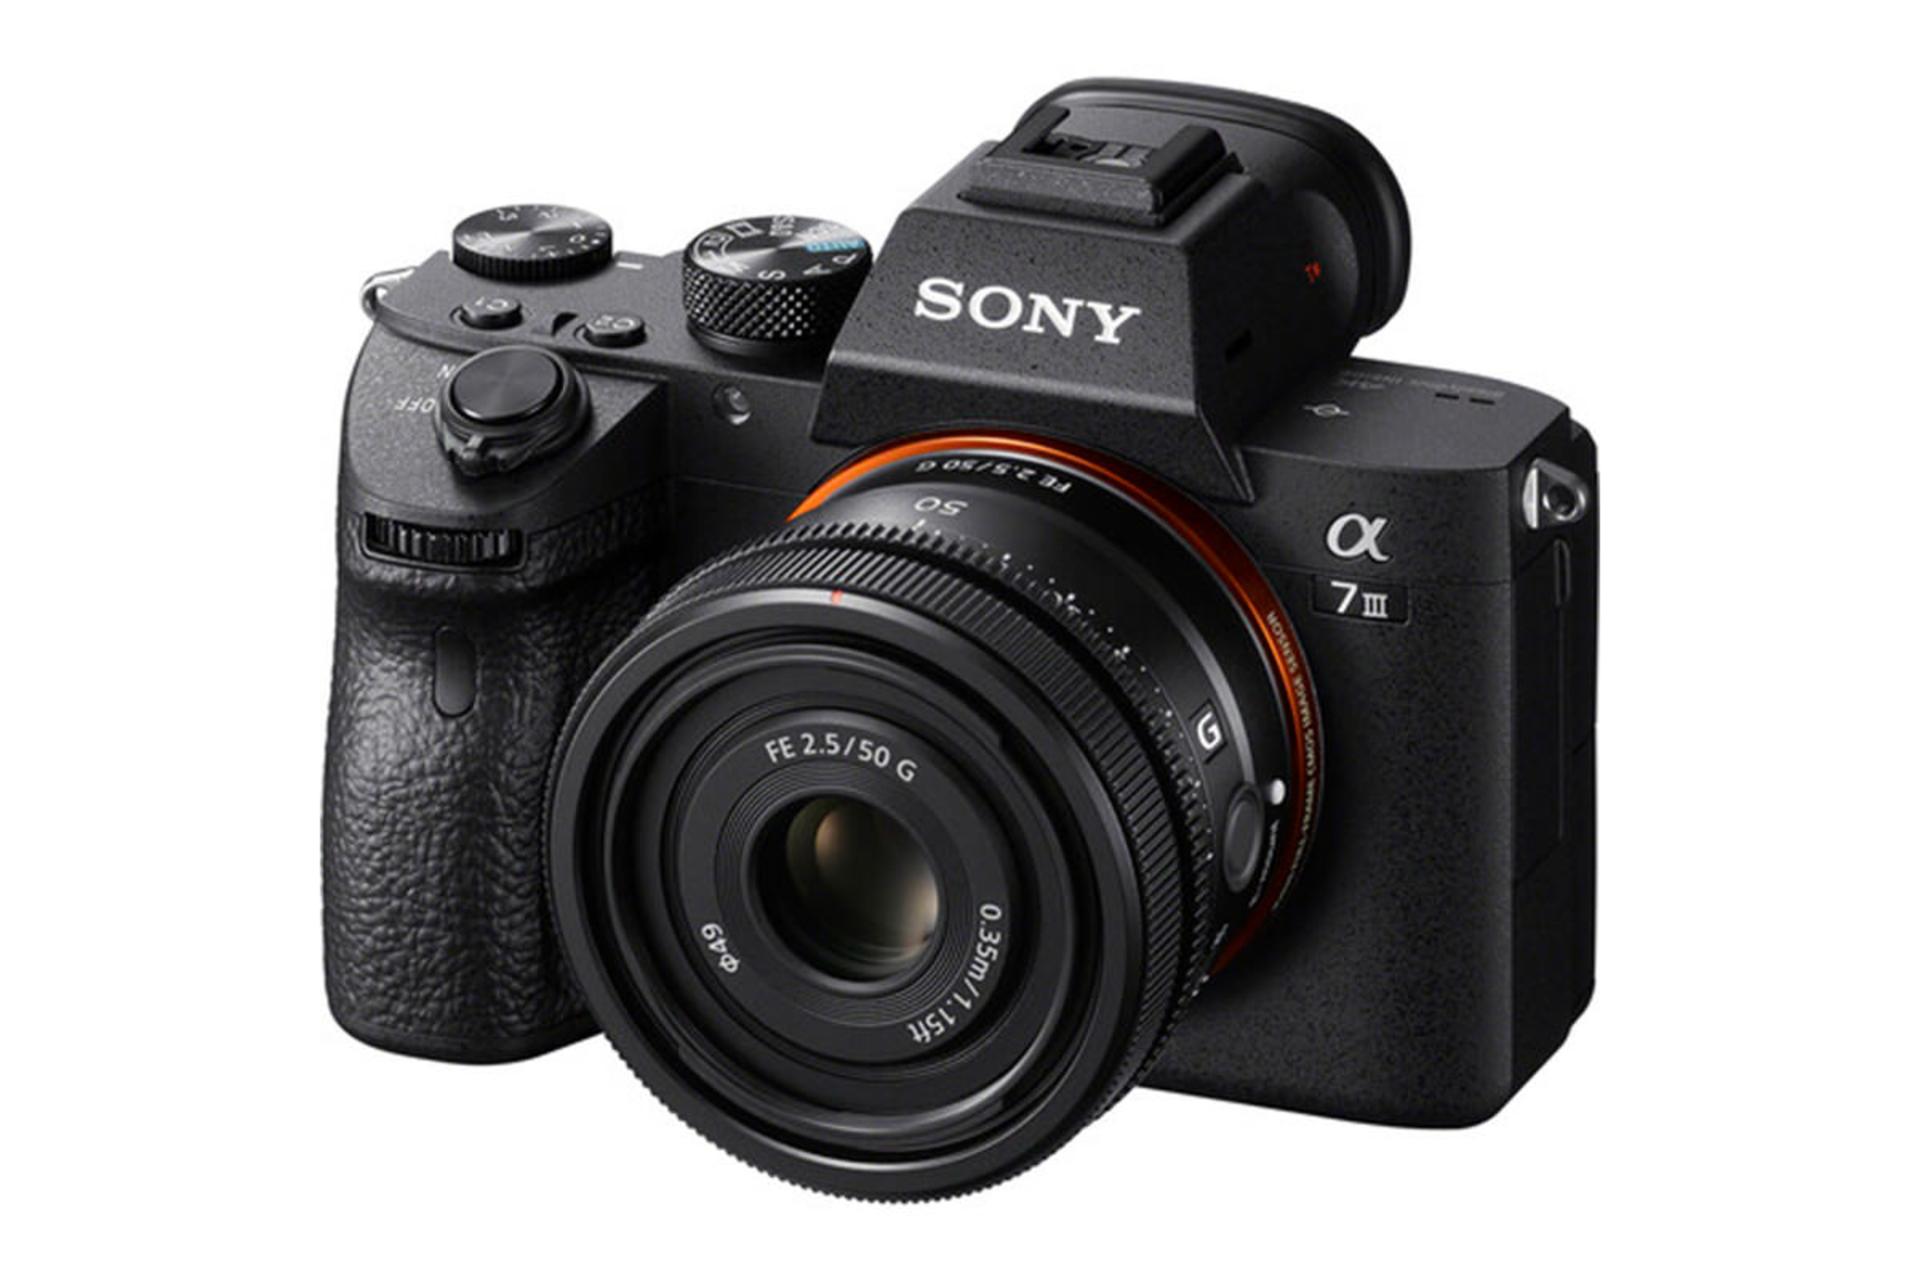  لنز سونی FE 50mm F2.5 G نصب روی دوربین